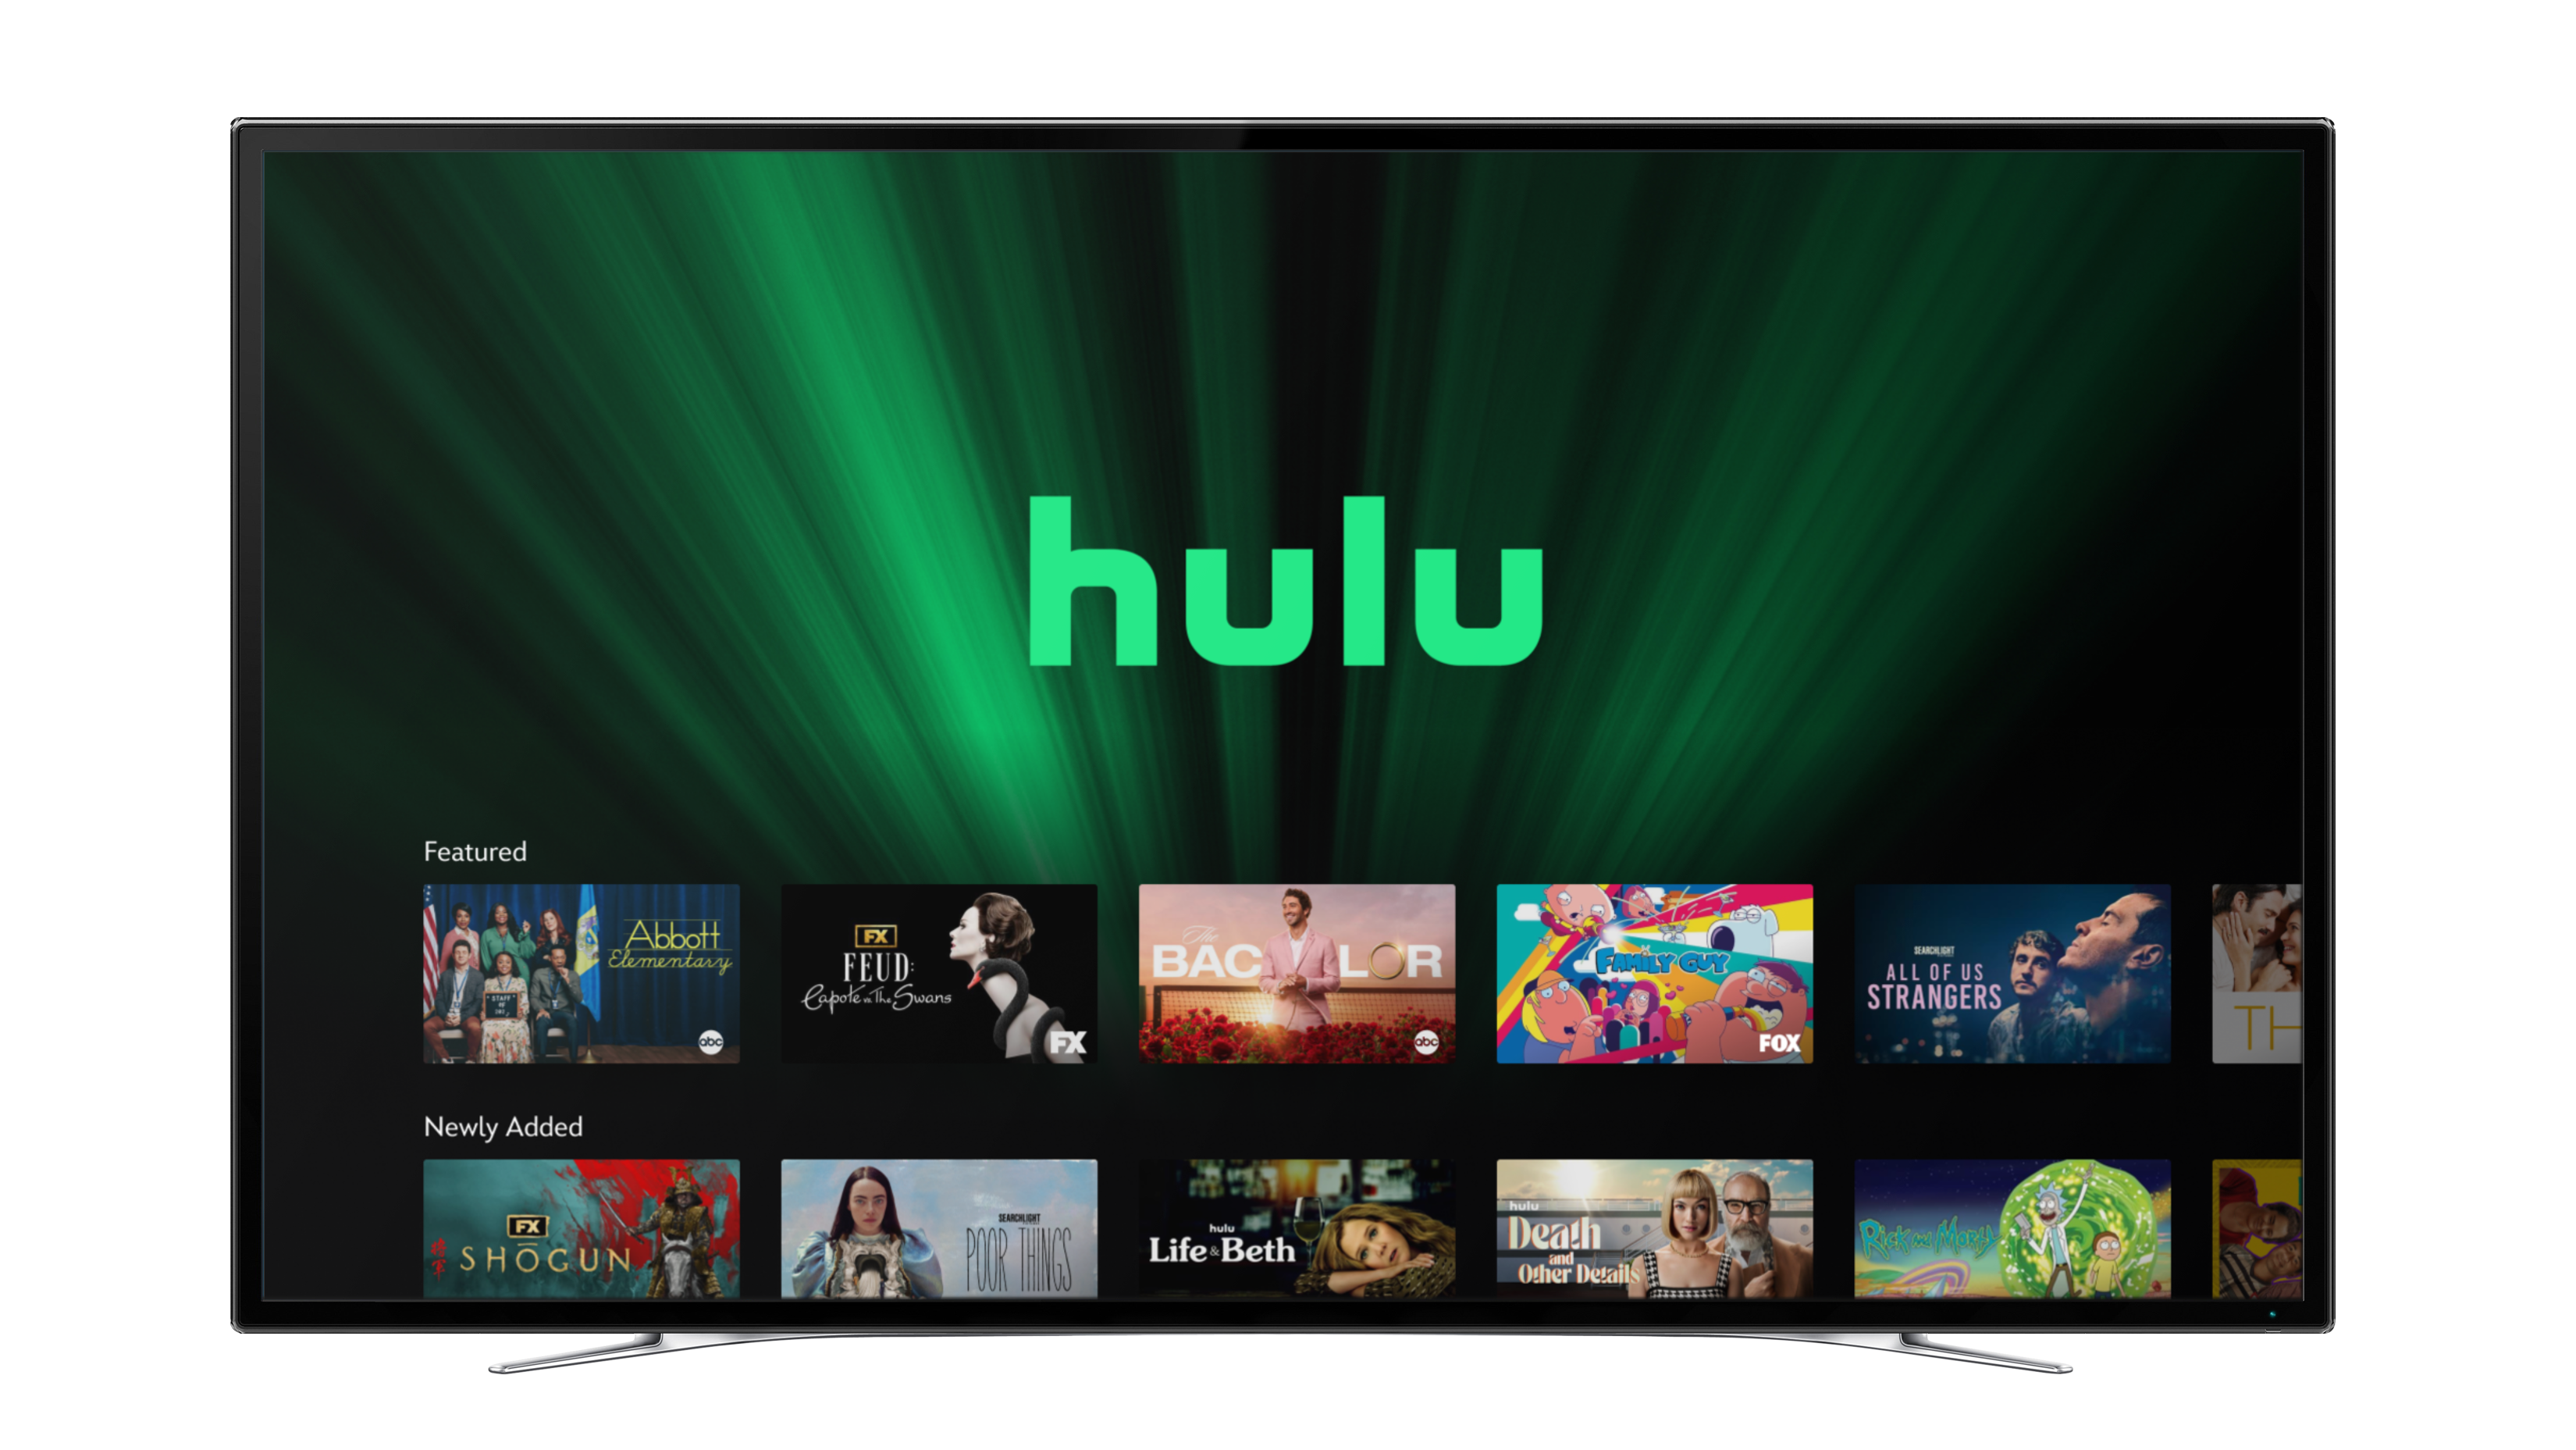 Hulu on Disney+ - Hulu Hub